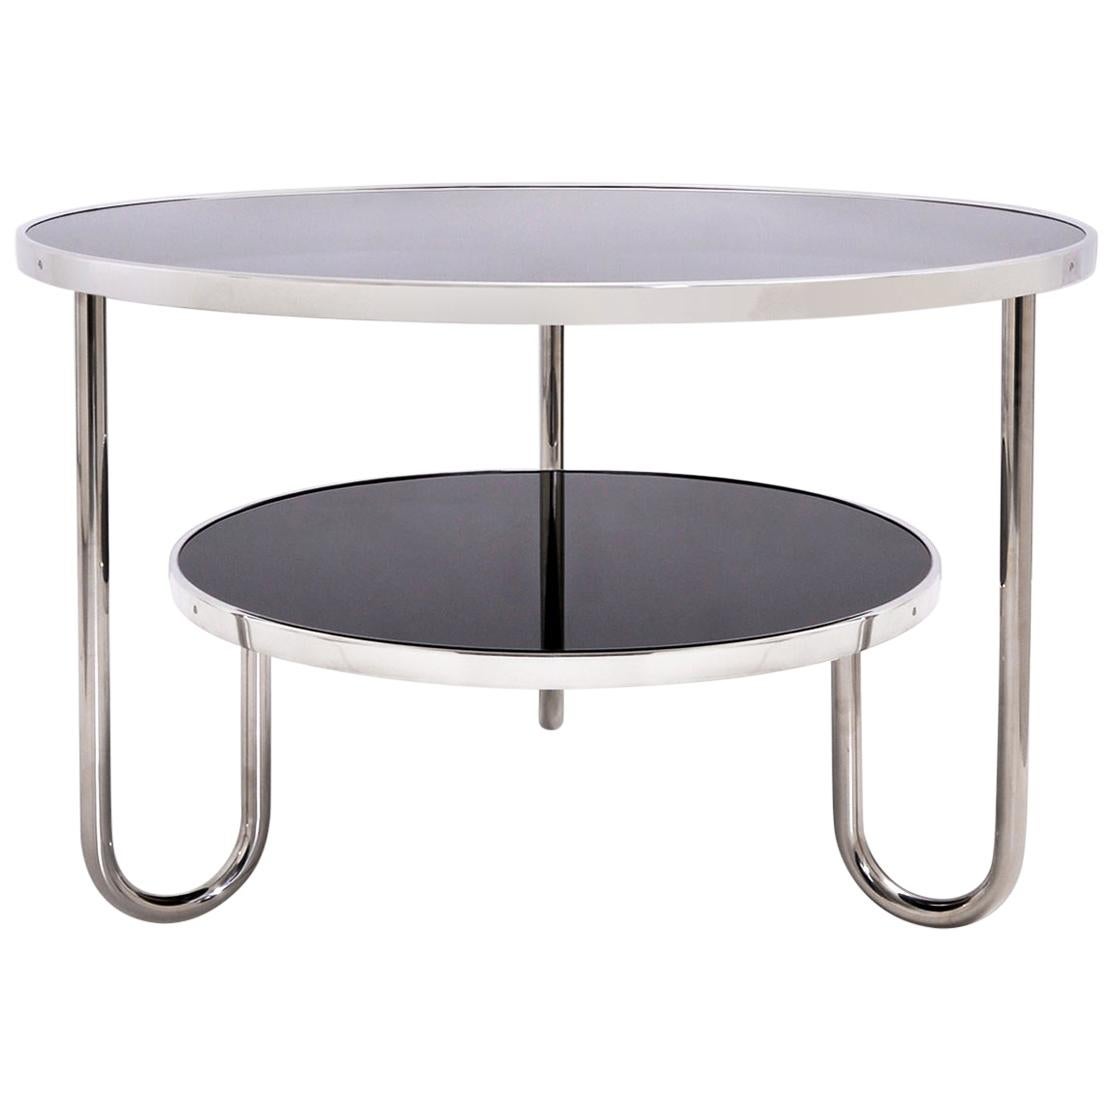 Table basse ronde moderniste, acier tubulaire plaqué chrome, plateaux en verre, Allemagne